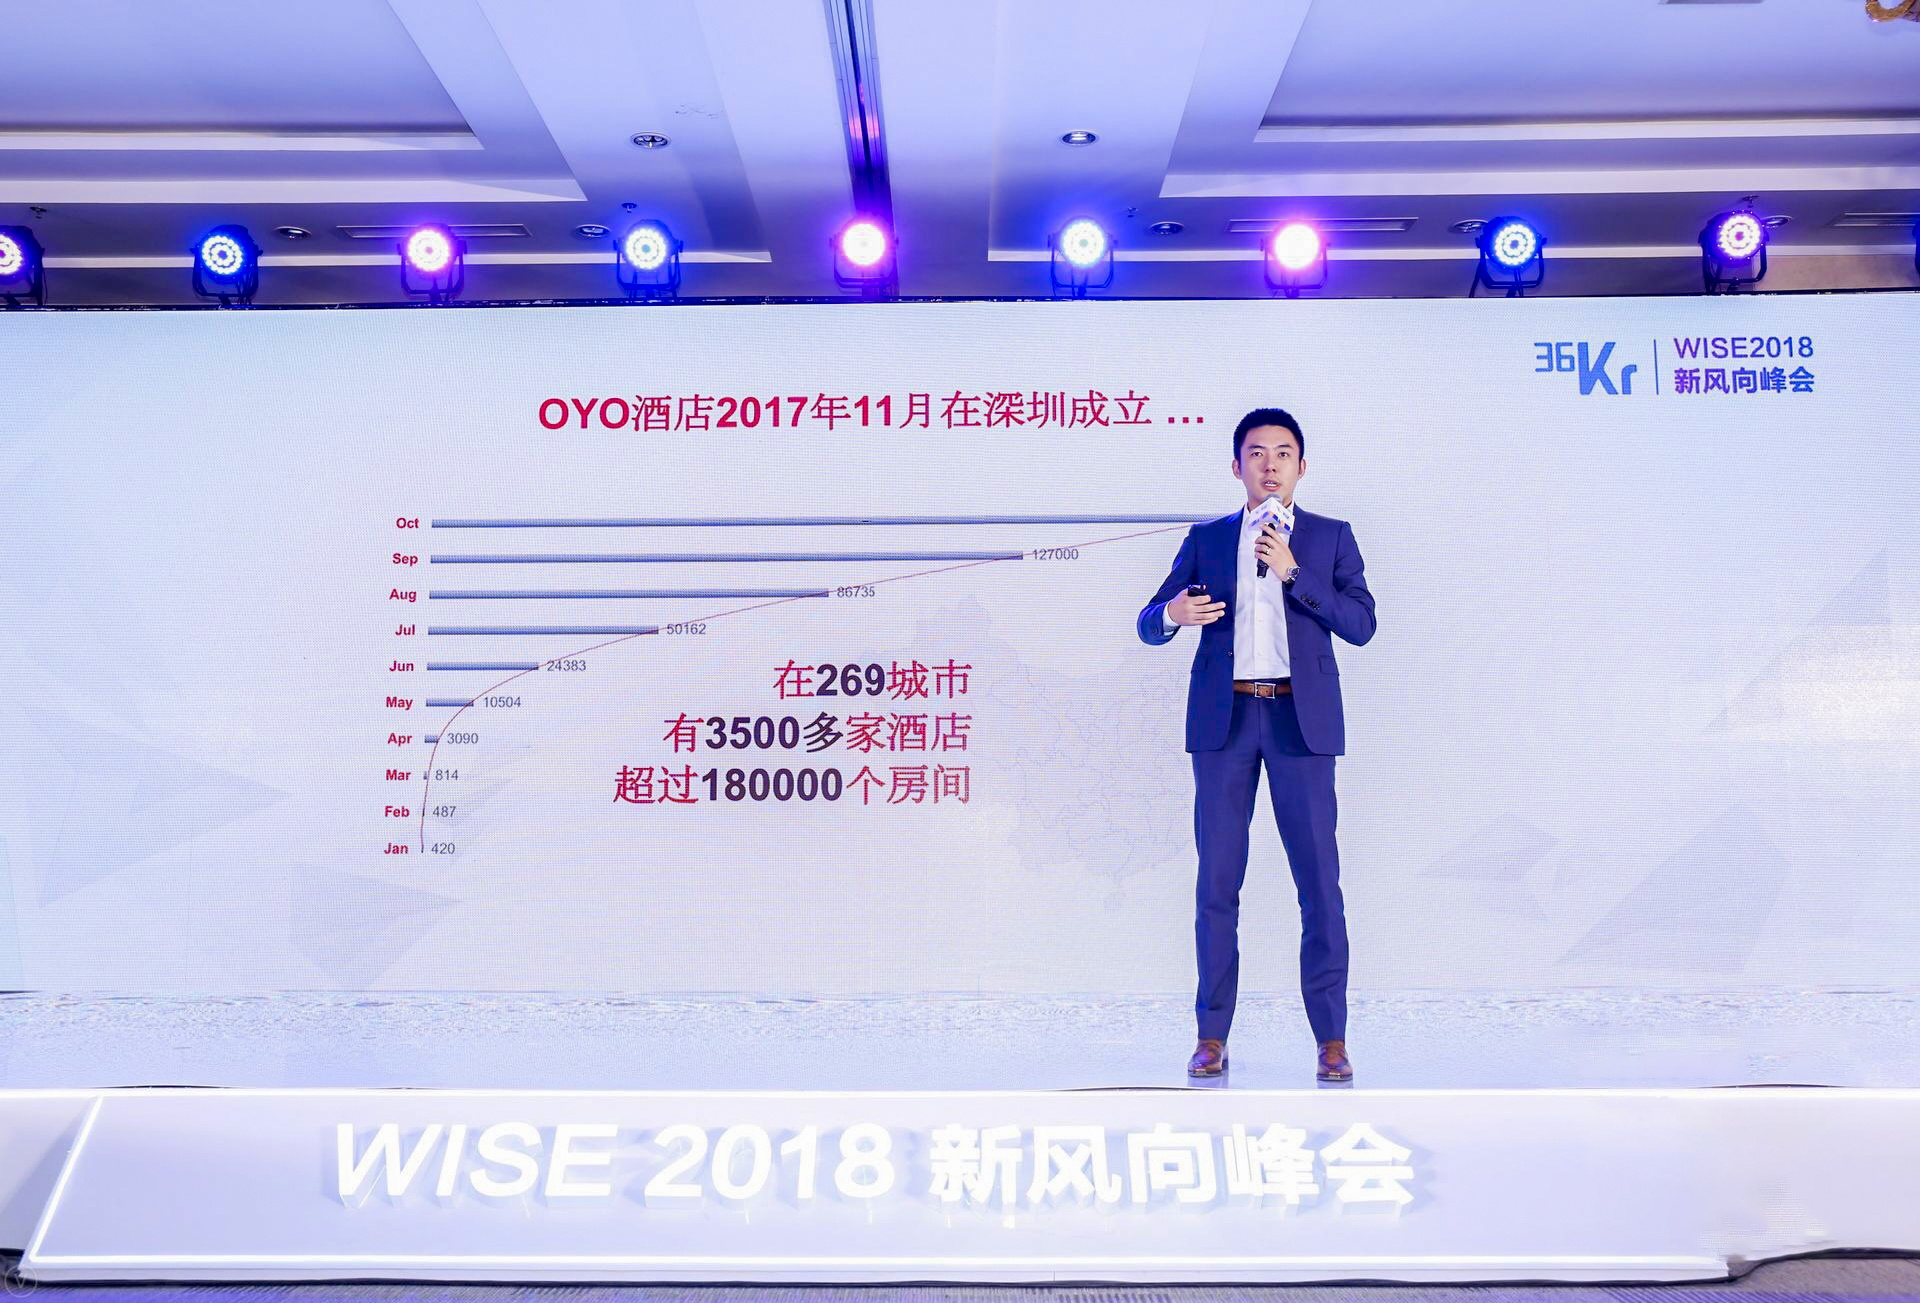 36氪专访 | OYO 酒店李维：用新经济打法改造存量市场，一年开出 3500 家酒店